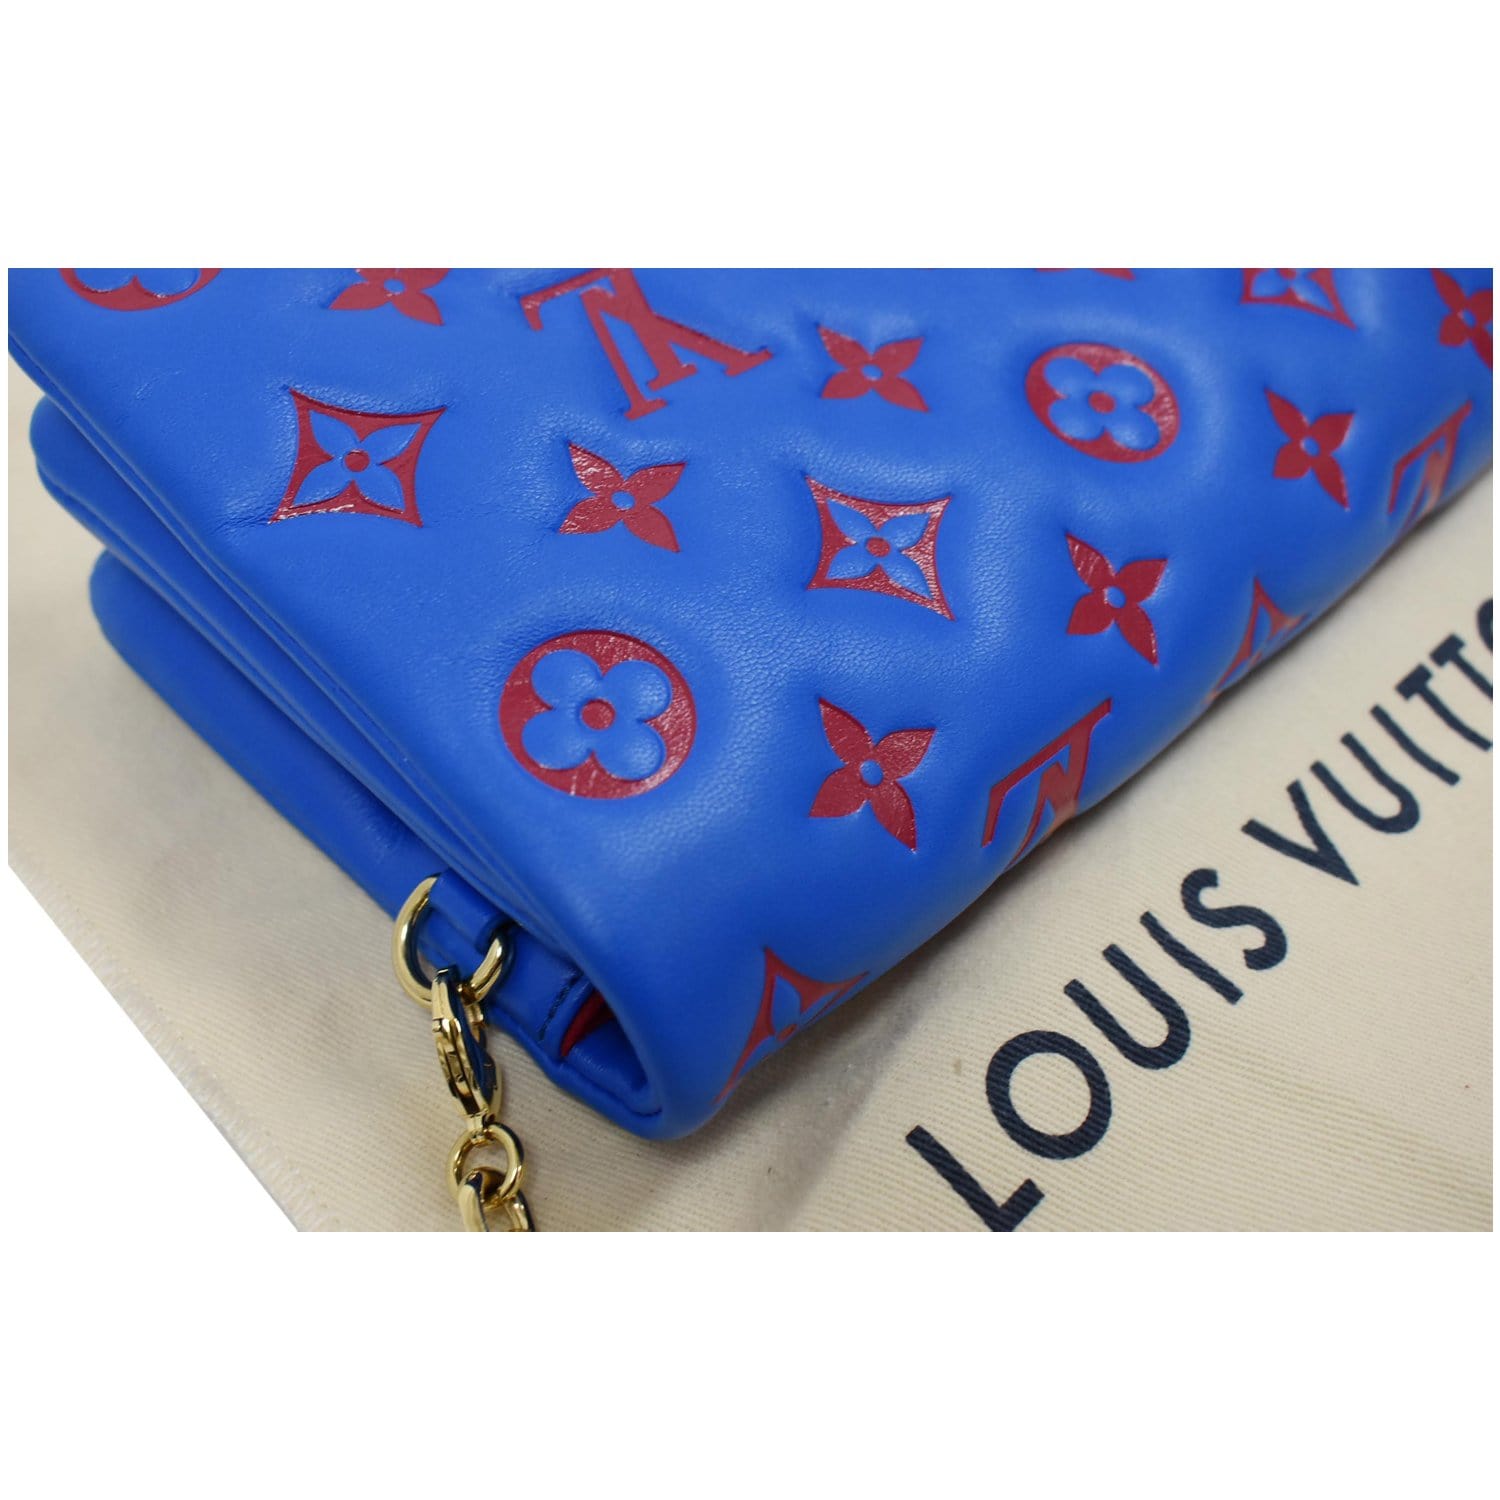 Louis Vuitton Black Monogram Leather Coussin Pochette Bag Louis Vuitton